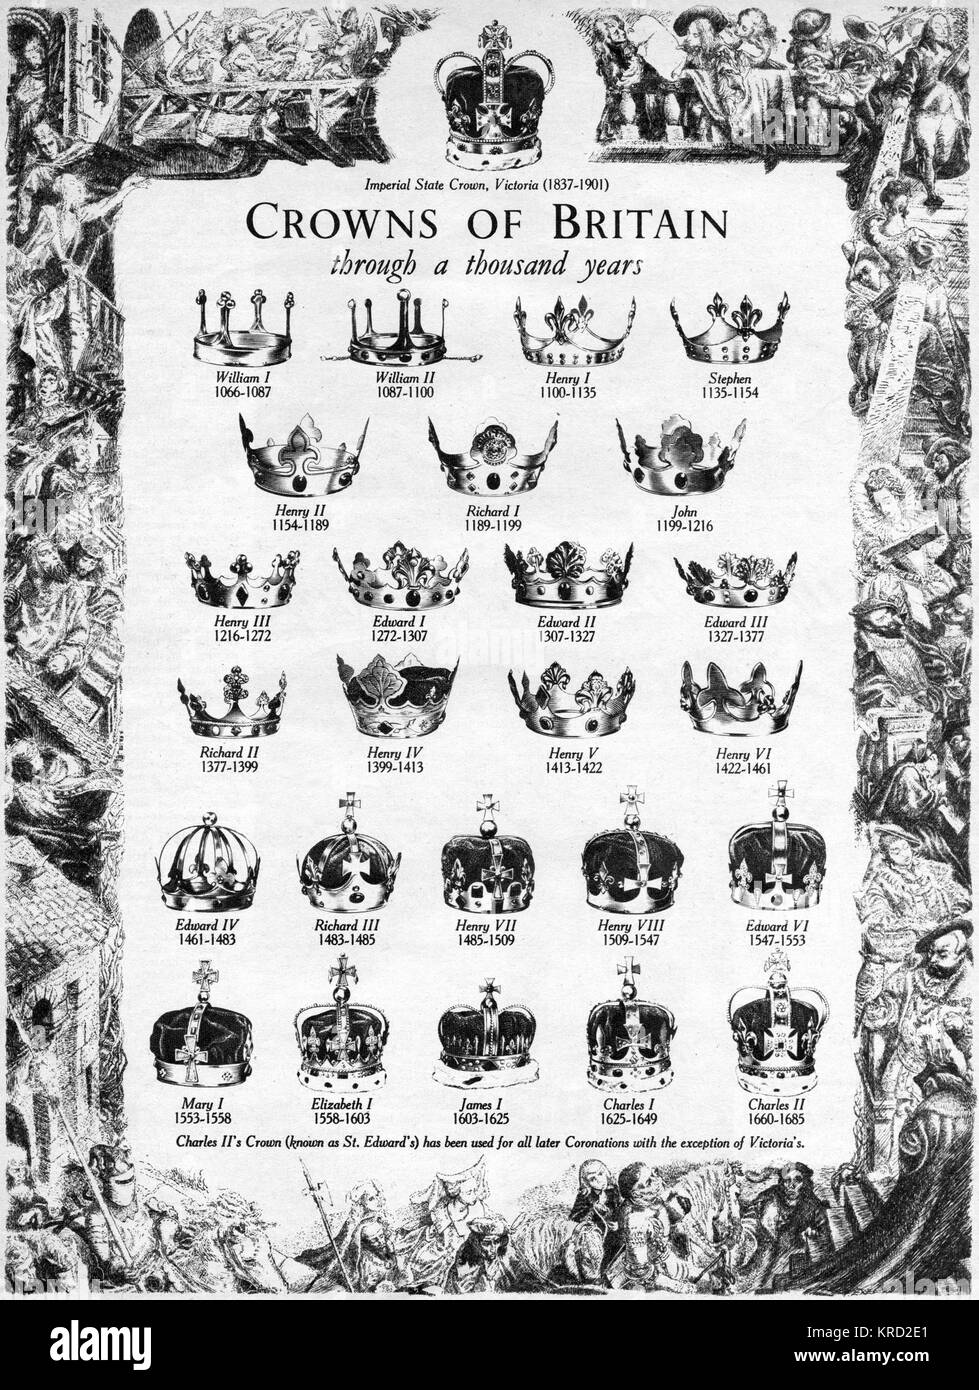 Le numerose corone di Bretagna, utilizzato attraverso un migliaio di anni. La stato di Imperial Crown è mostrato nella parte superiore della pagina e il finale, corona in basso a destra, è St. Edward's, indossato da re Carlo II e utilizzato in tutte le successive incoronazioni ad eccezione della regina Victoria che ha usato solo la stato di Imperial Crown. Data: 1953 Foto Stock